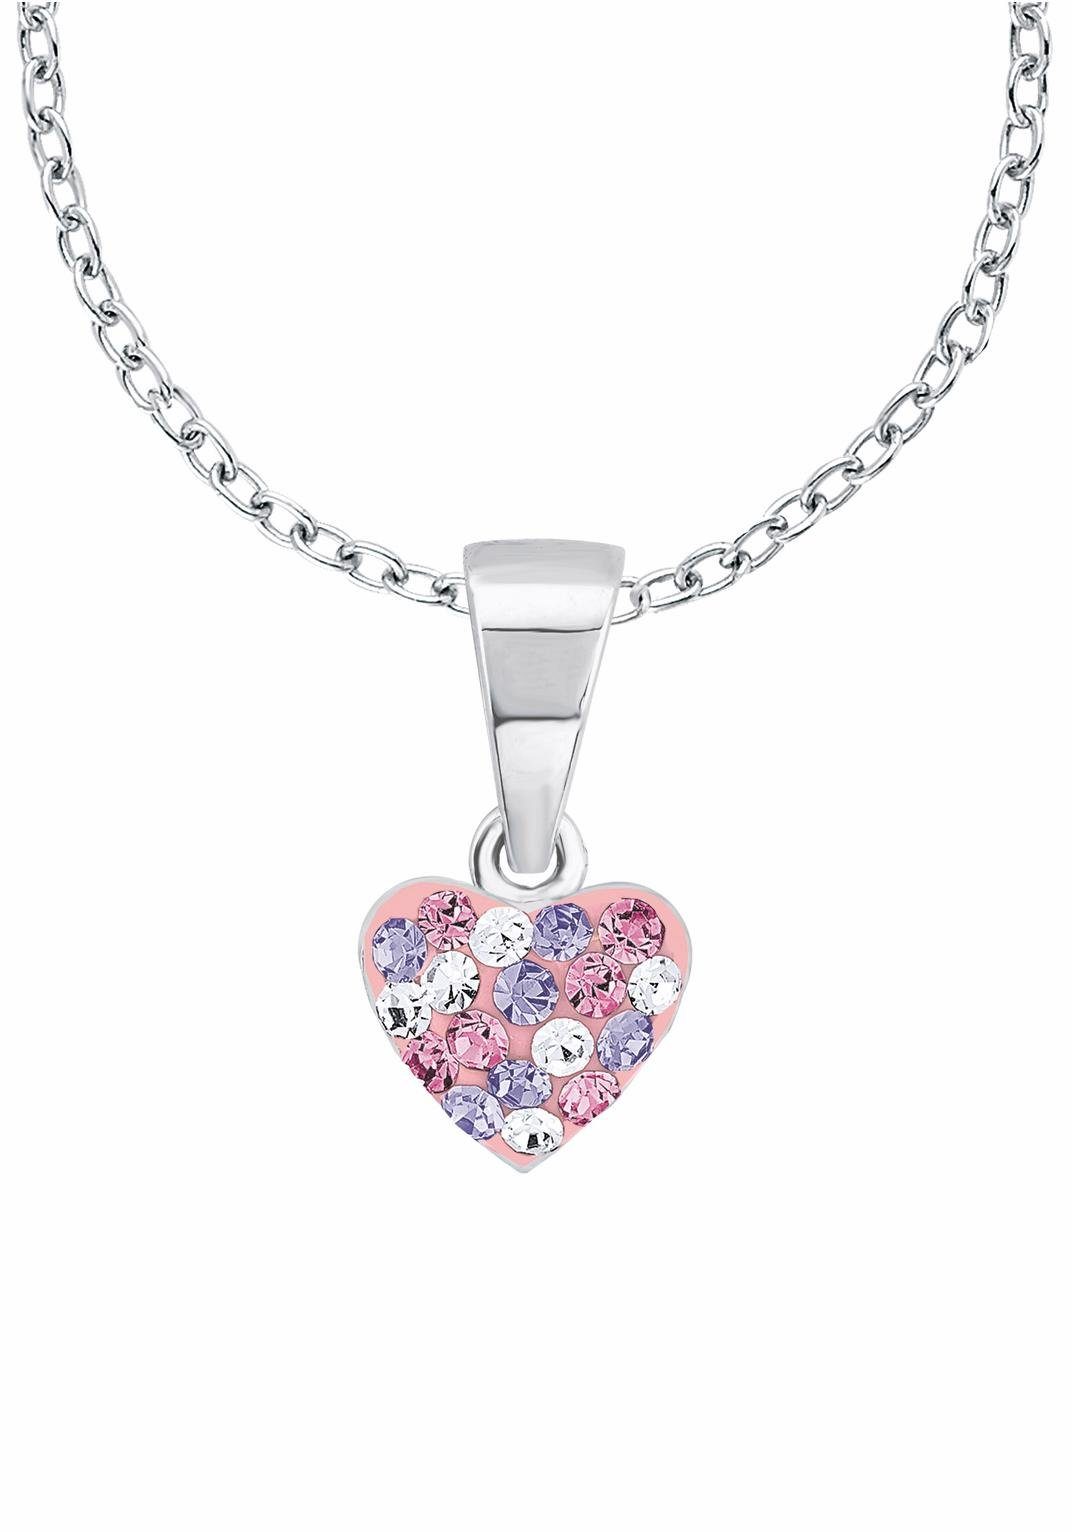 mit Bestückt Prinzessin 2013171, Kristallsteinen Silberkette Herz, Kristallsteinen, mit Lillifee glänzenden